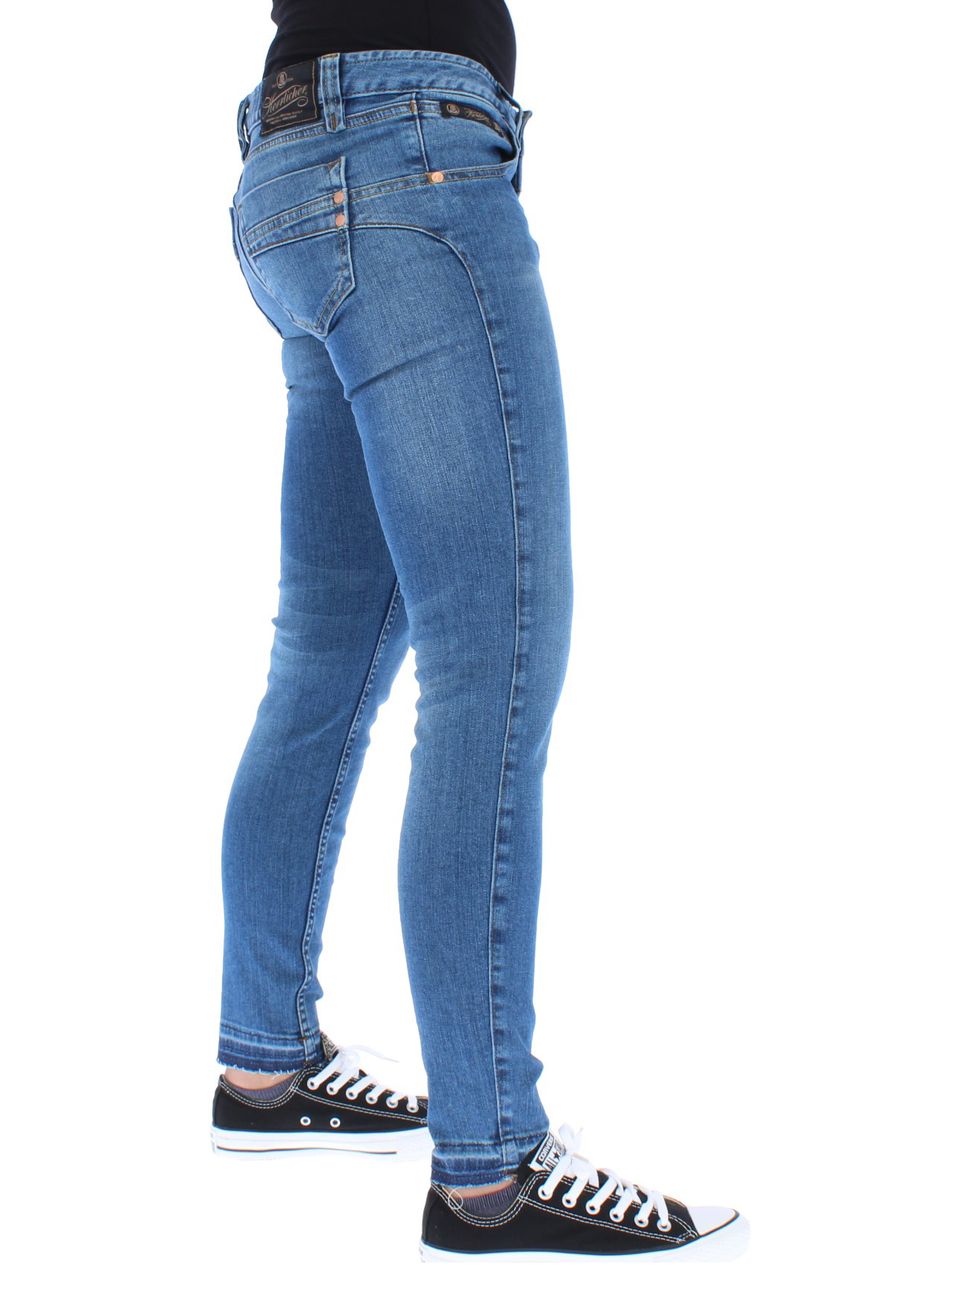 Herrlicher Damen Jeans Touch Cropped 076 Blend - Herrlicher - SAGATOO - 4053192488916